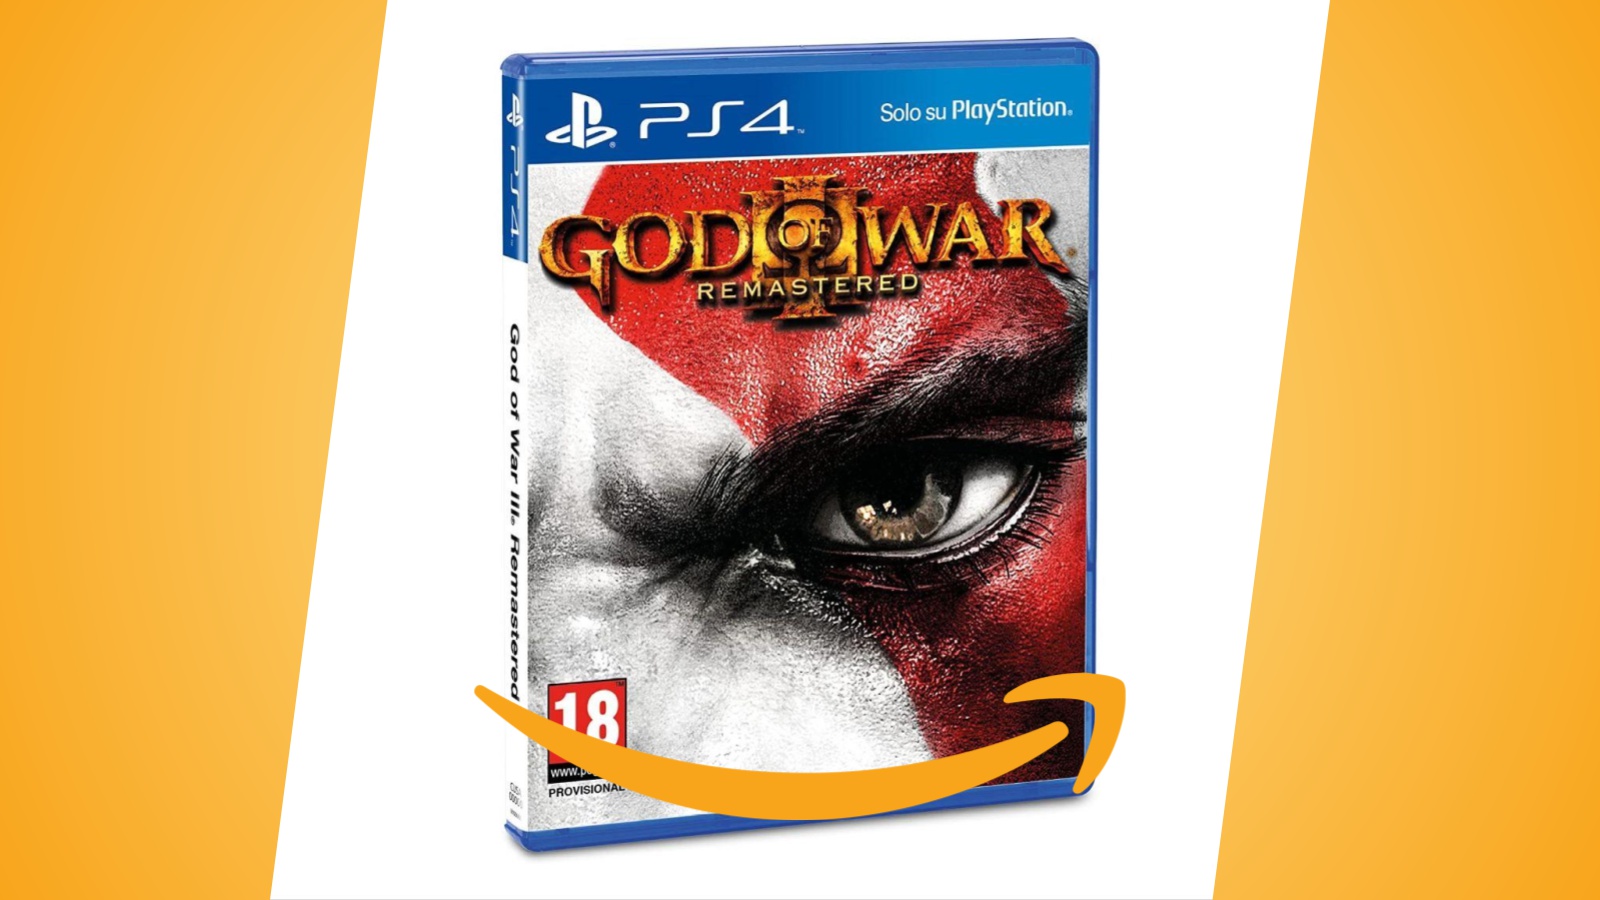 Offerte : God of War III Remastered per PS4 al prezzo minimo storico,  in forte sconto 